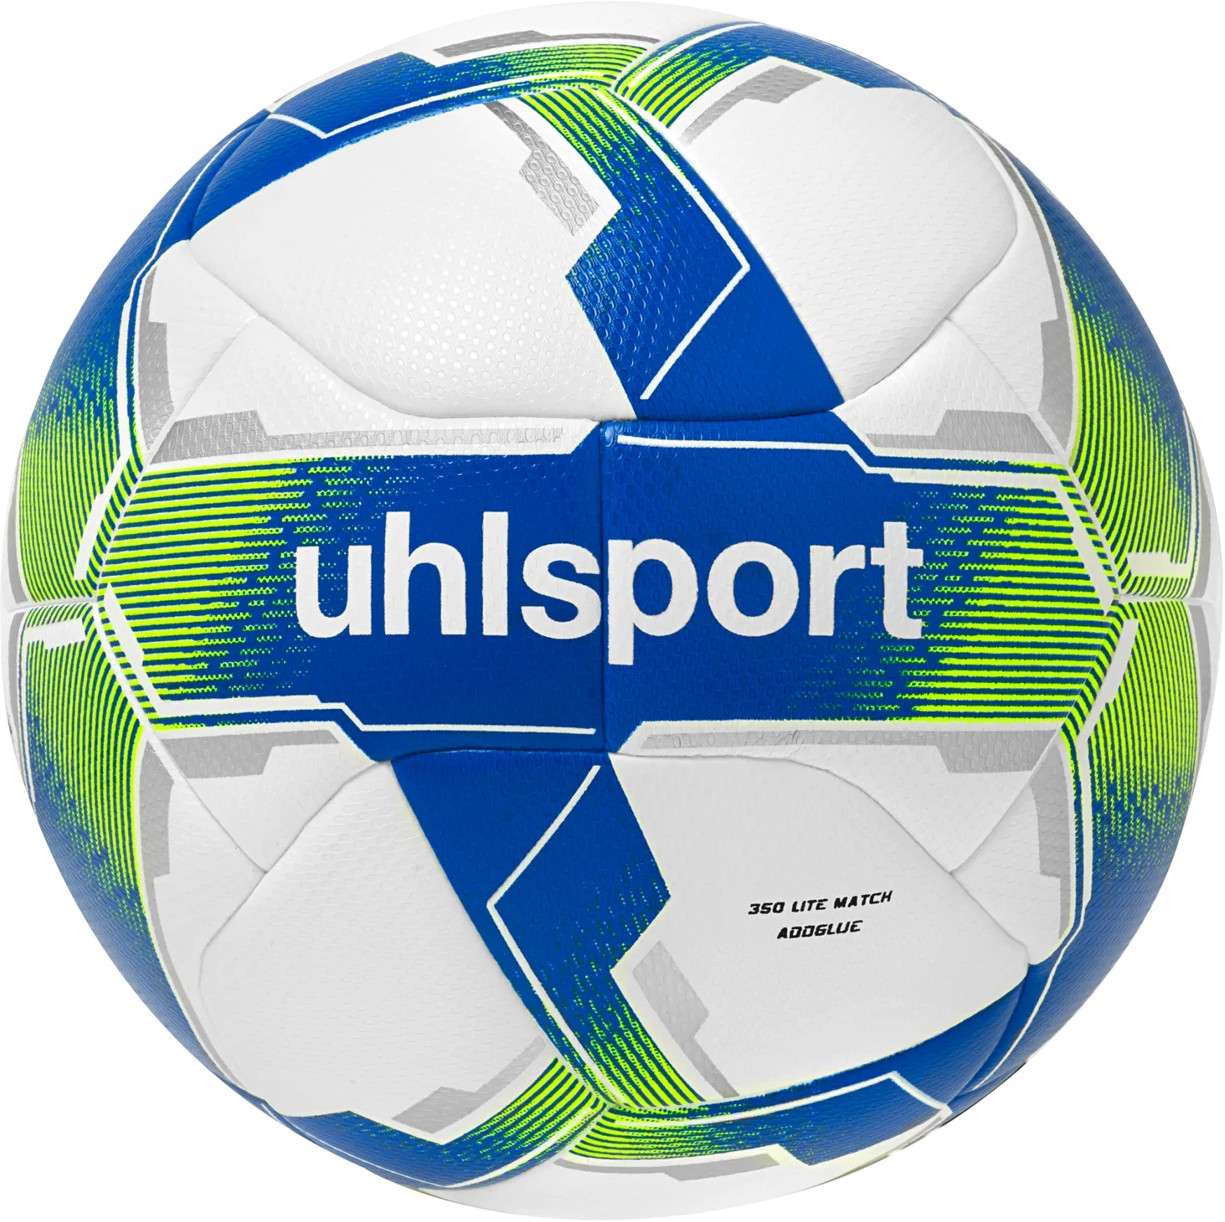 Tréninkový míč Uhlsport 350 Lite Addglue